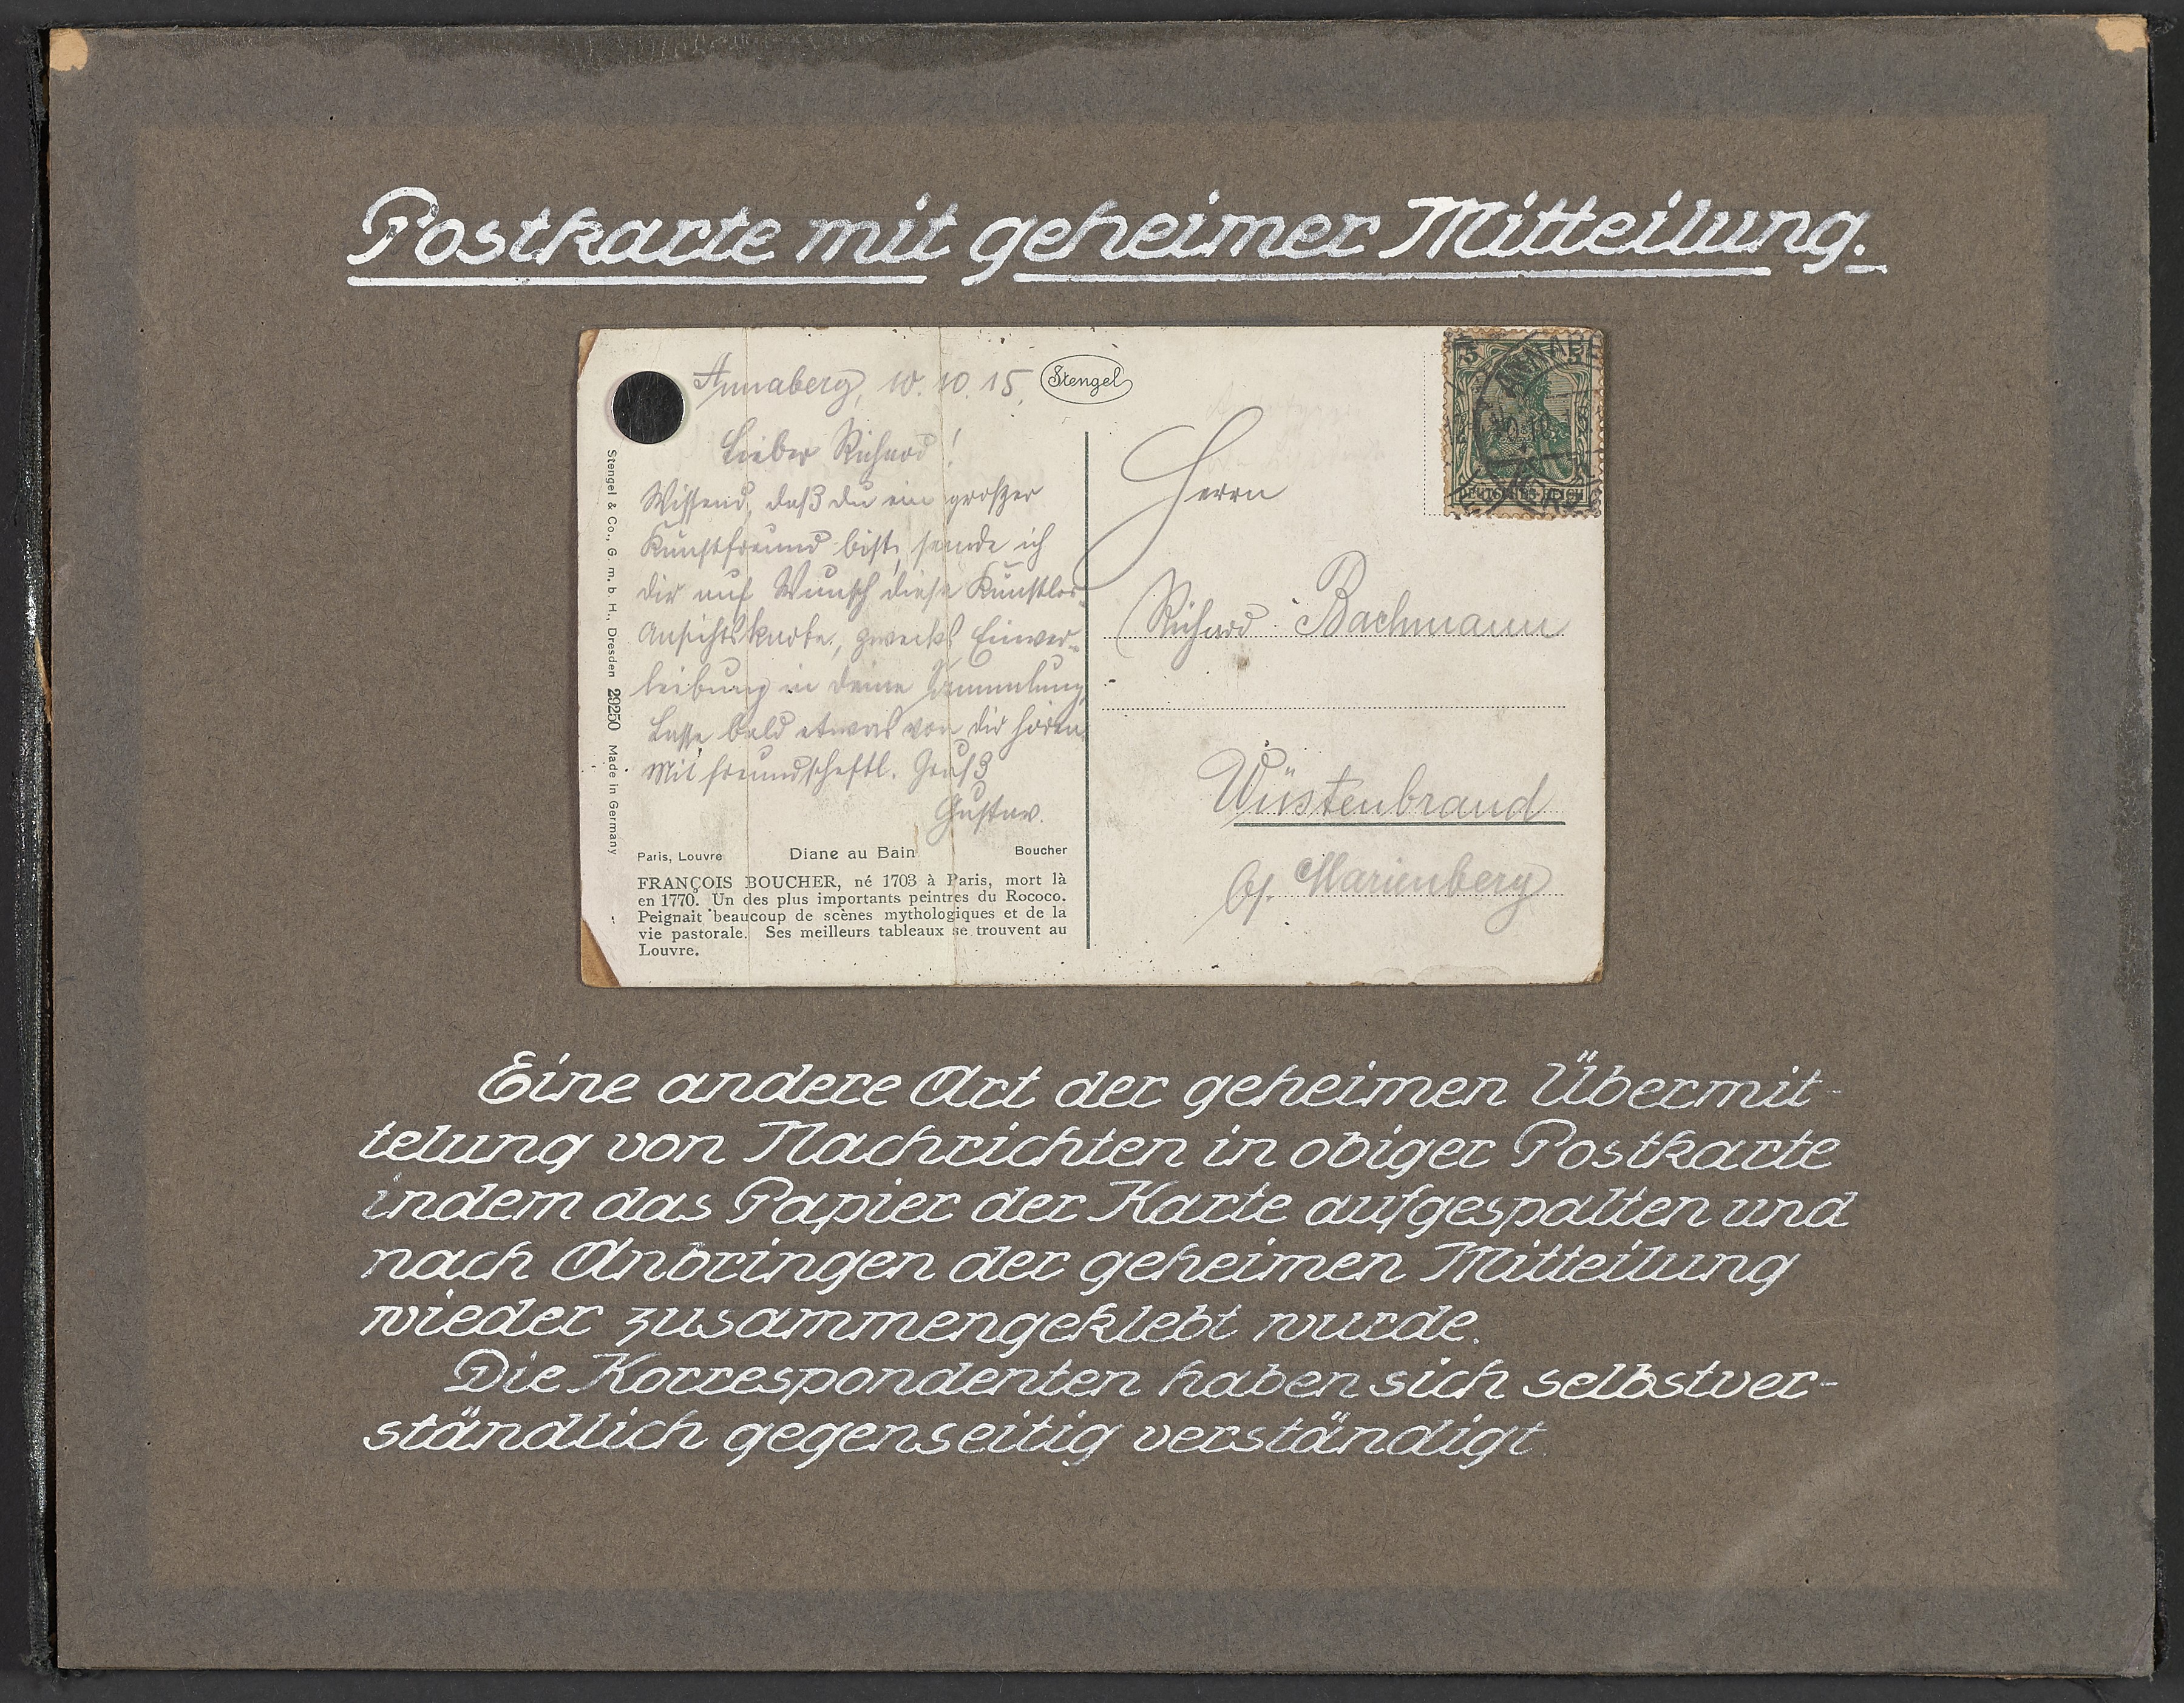 Lehrtafel "Postkarte mit geheimer Mitteilung" Abbildung 1 (Polizeidirektion Dresden RR-F)